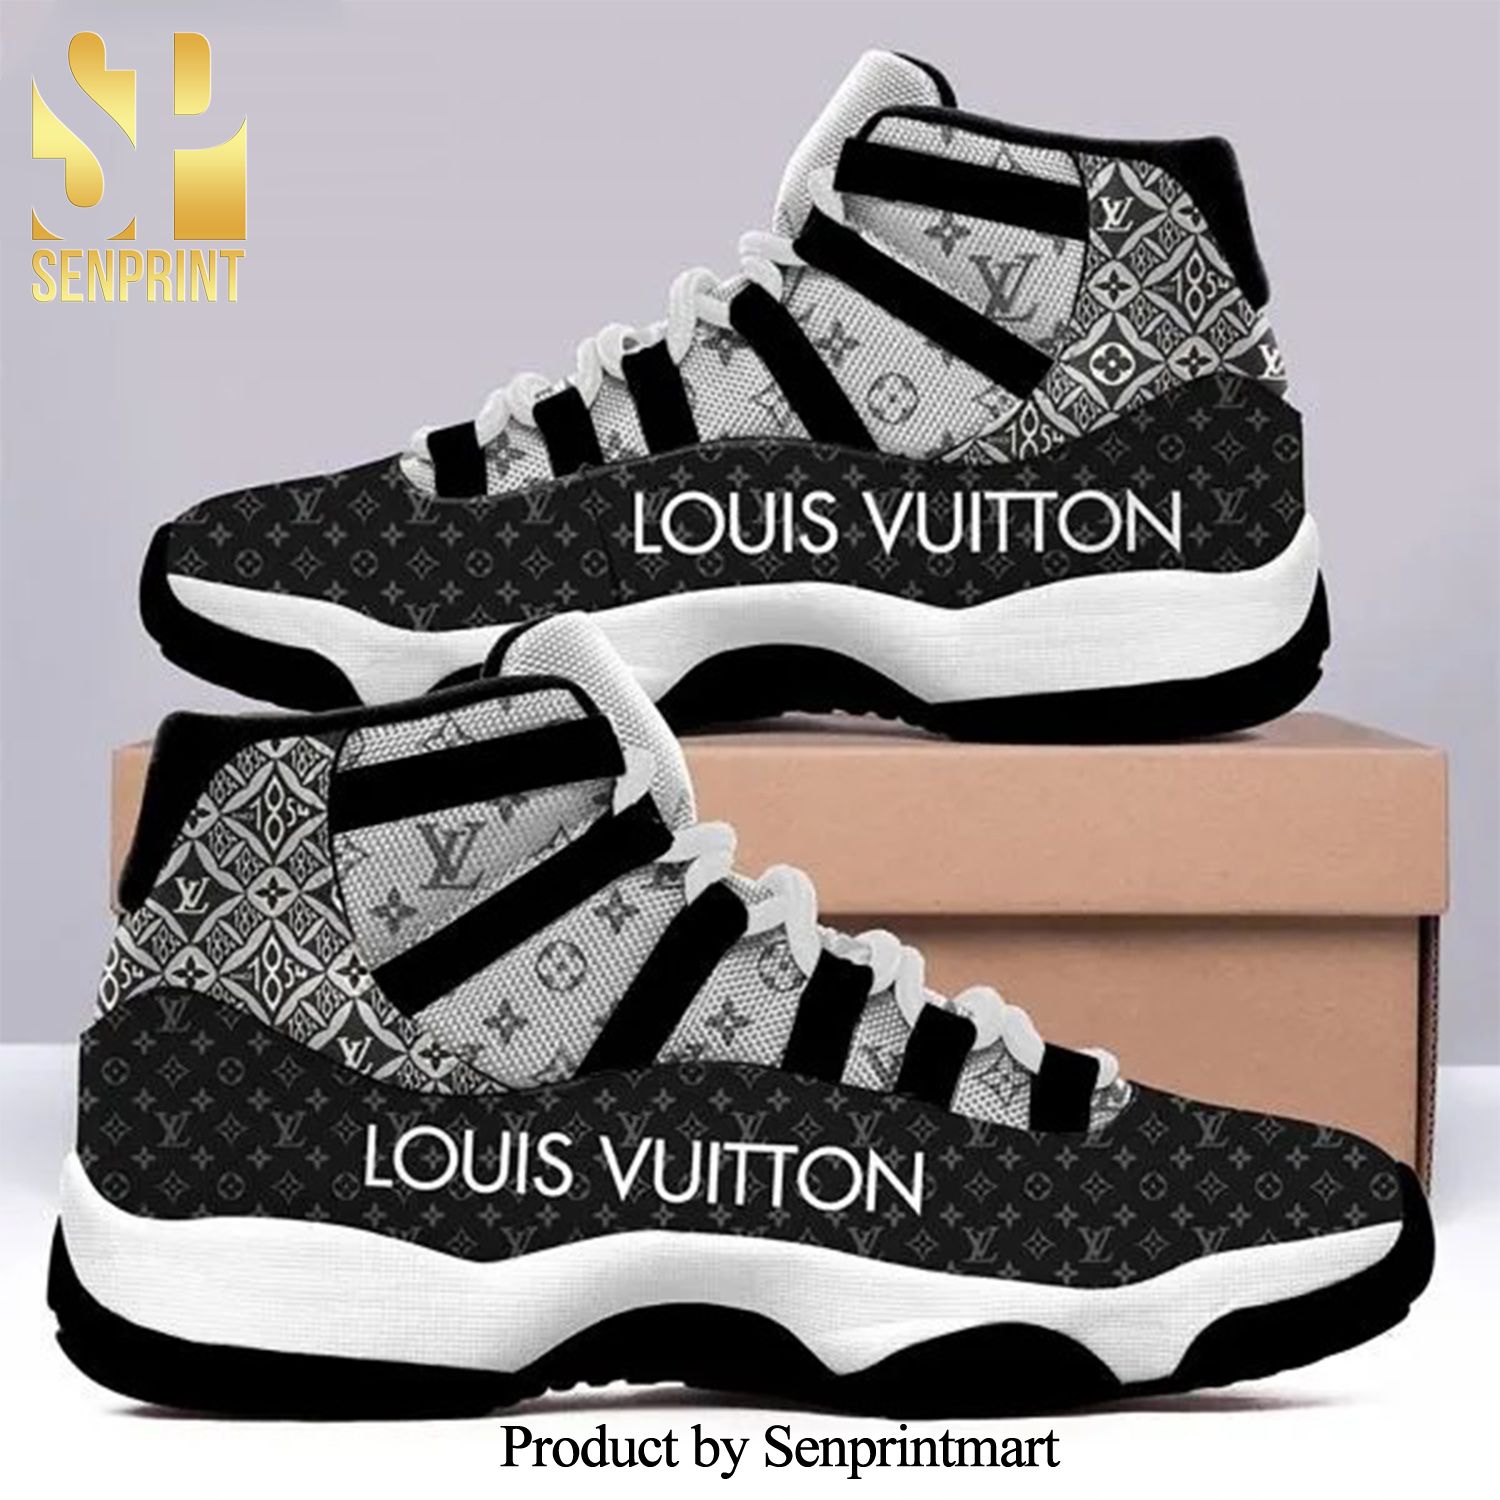 Louis vuitton High Fashion Air Jordan 11